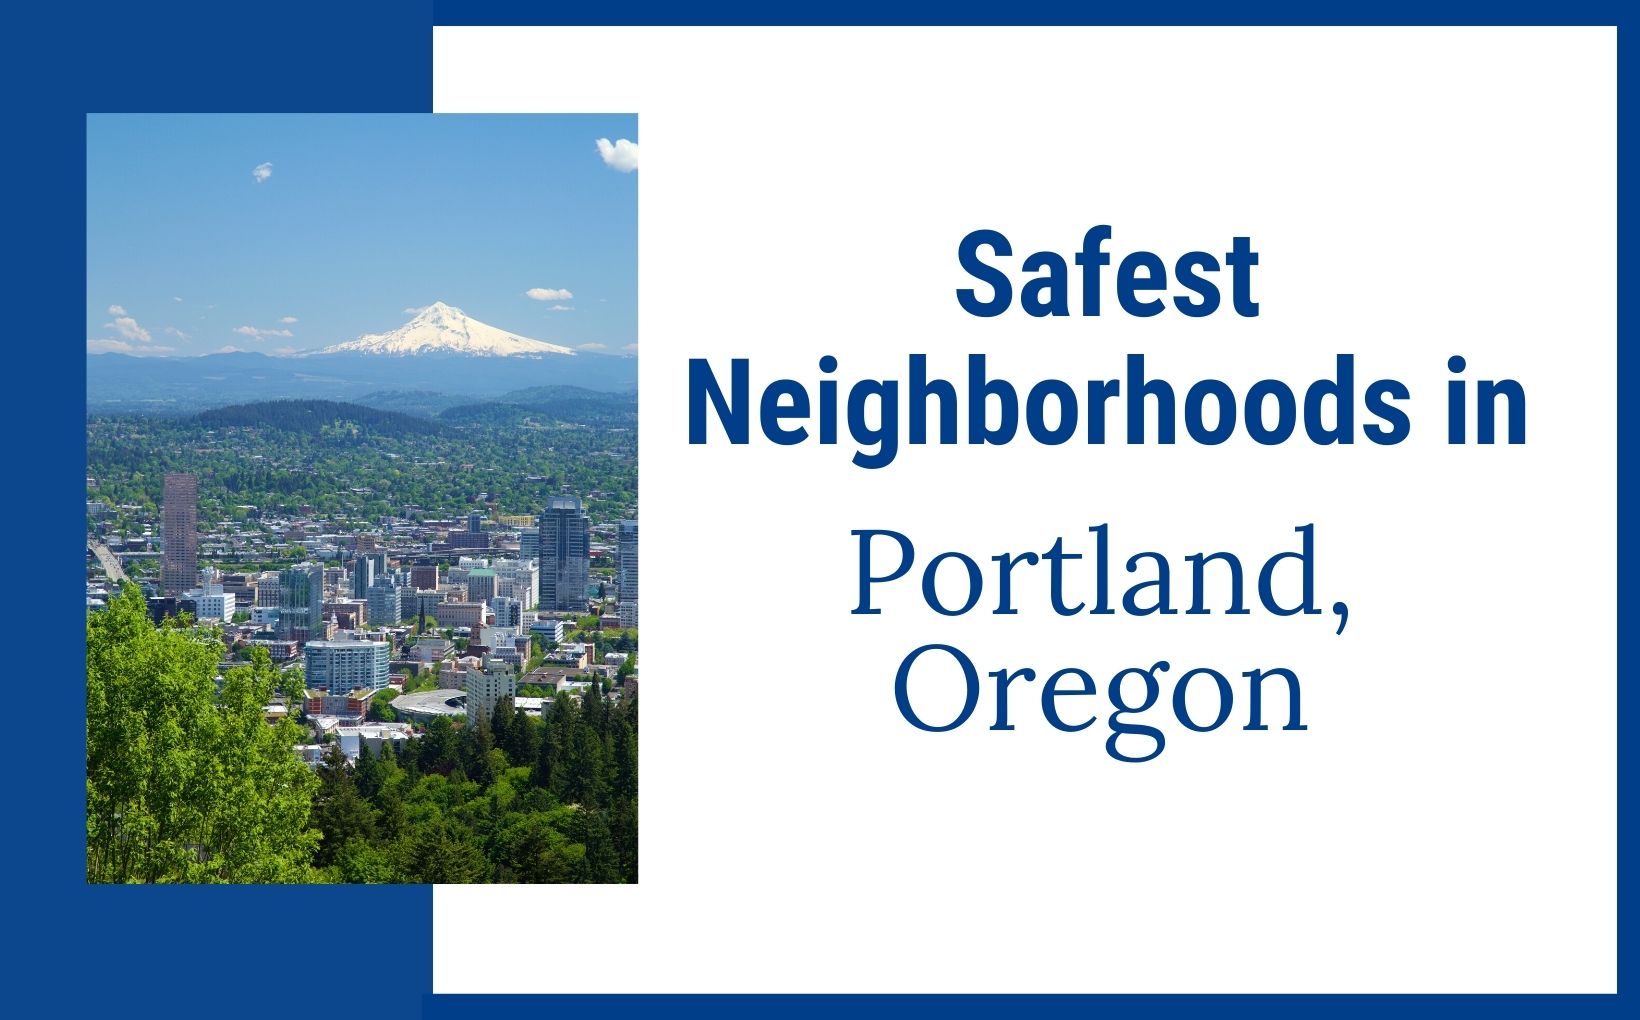 Safest Neighborhoods in Portland Oregon feature image